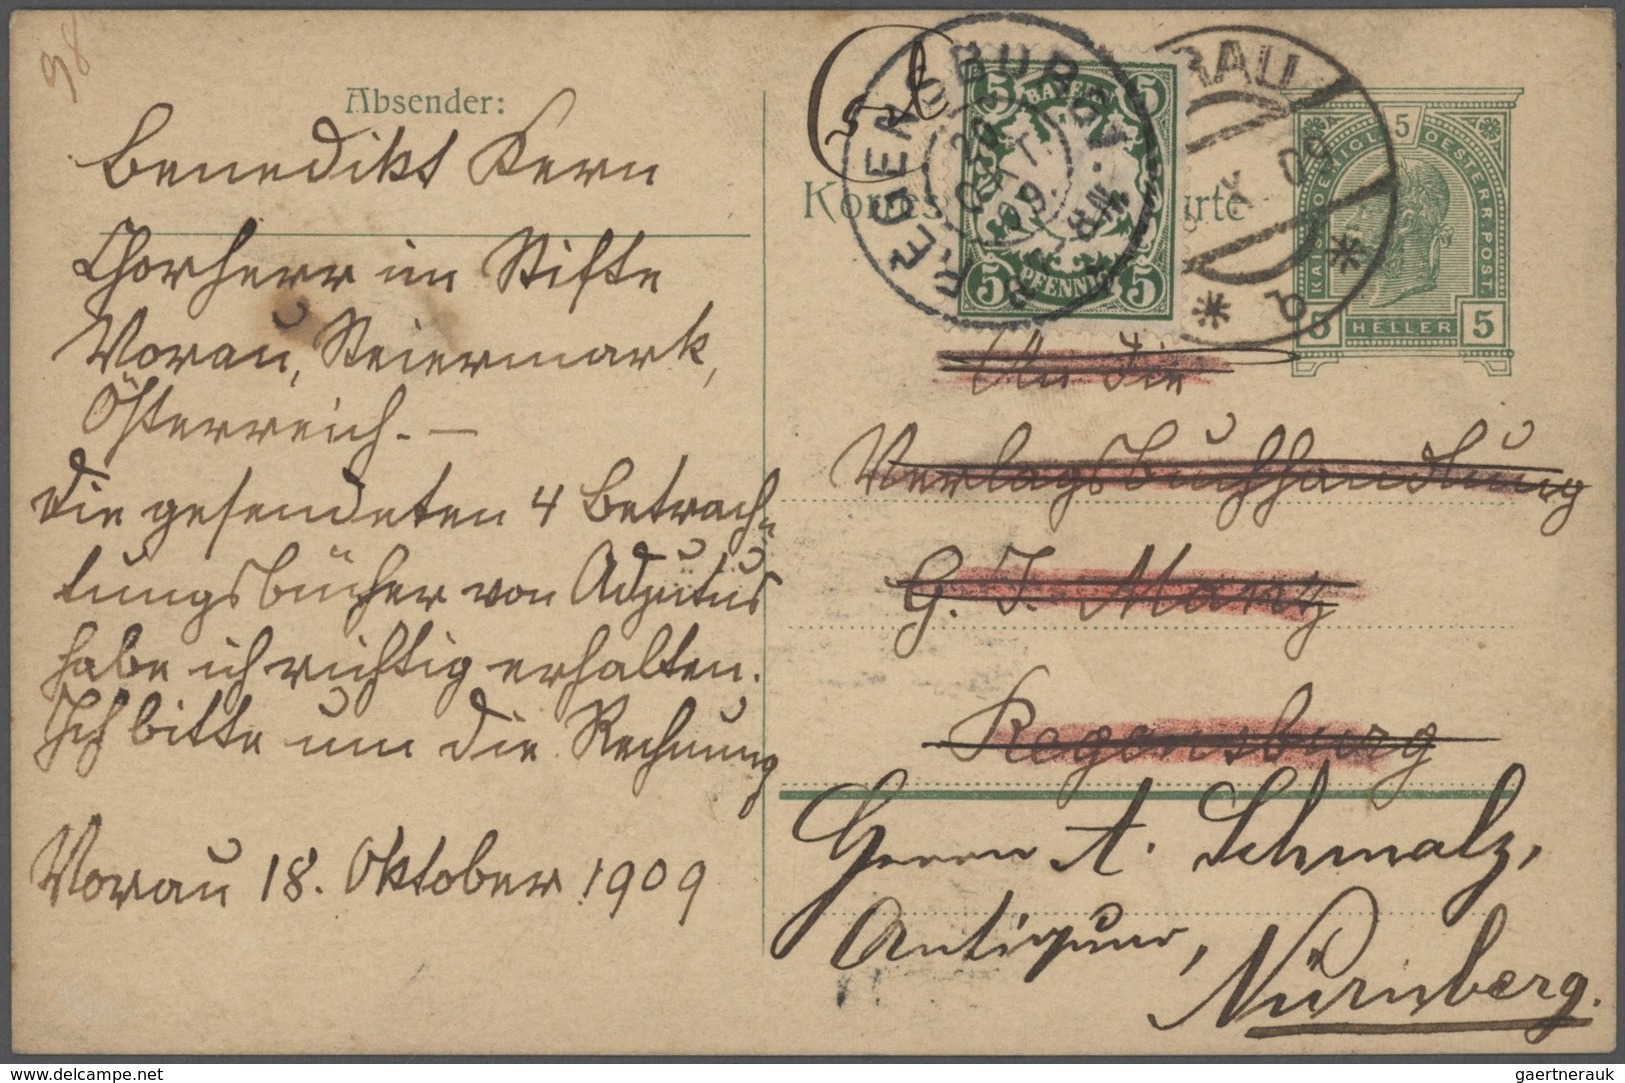 Bayern - Marken und Briefe: 1875/1920 Schöner Posten von 37 un(ter)frankierten Bayern-Belegen mit NA